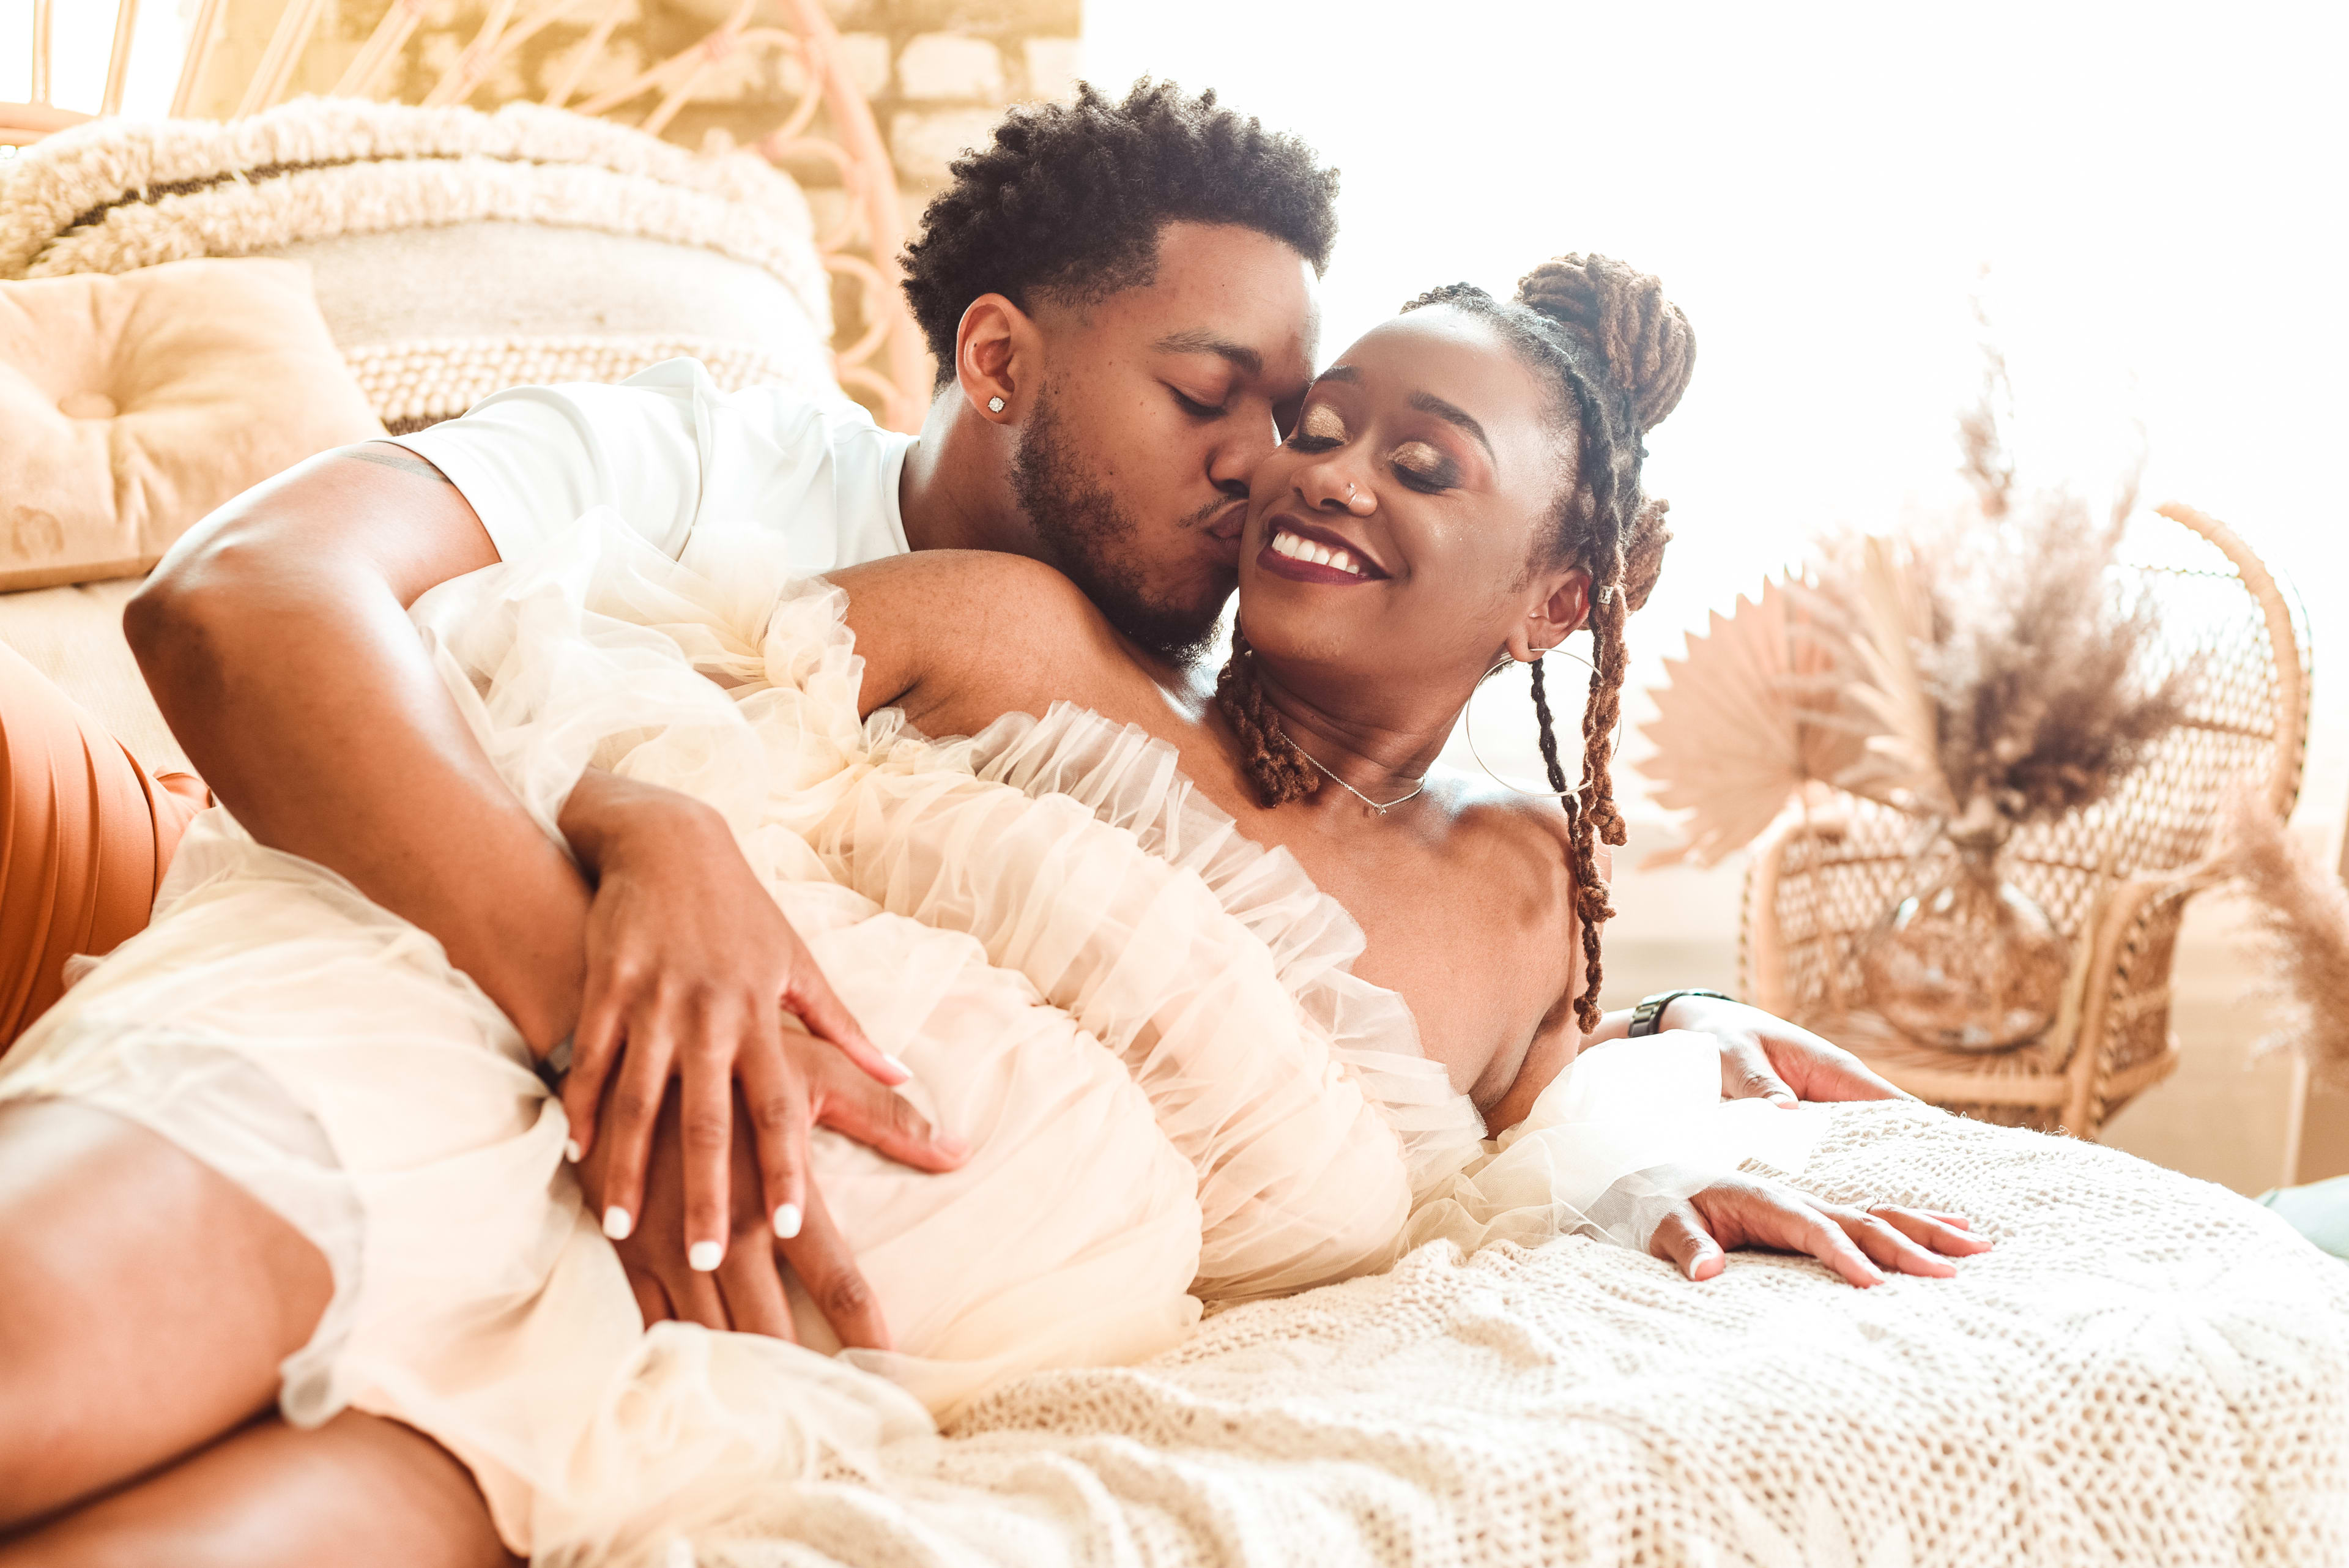 Un shooting photo de maternité en blanc d'un homme et d'une femme allongés sur un lit de style boho dans une literie beige.